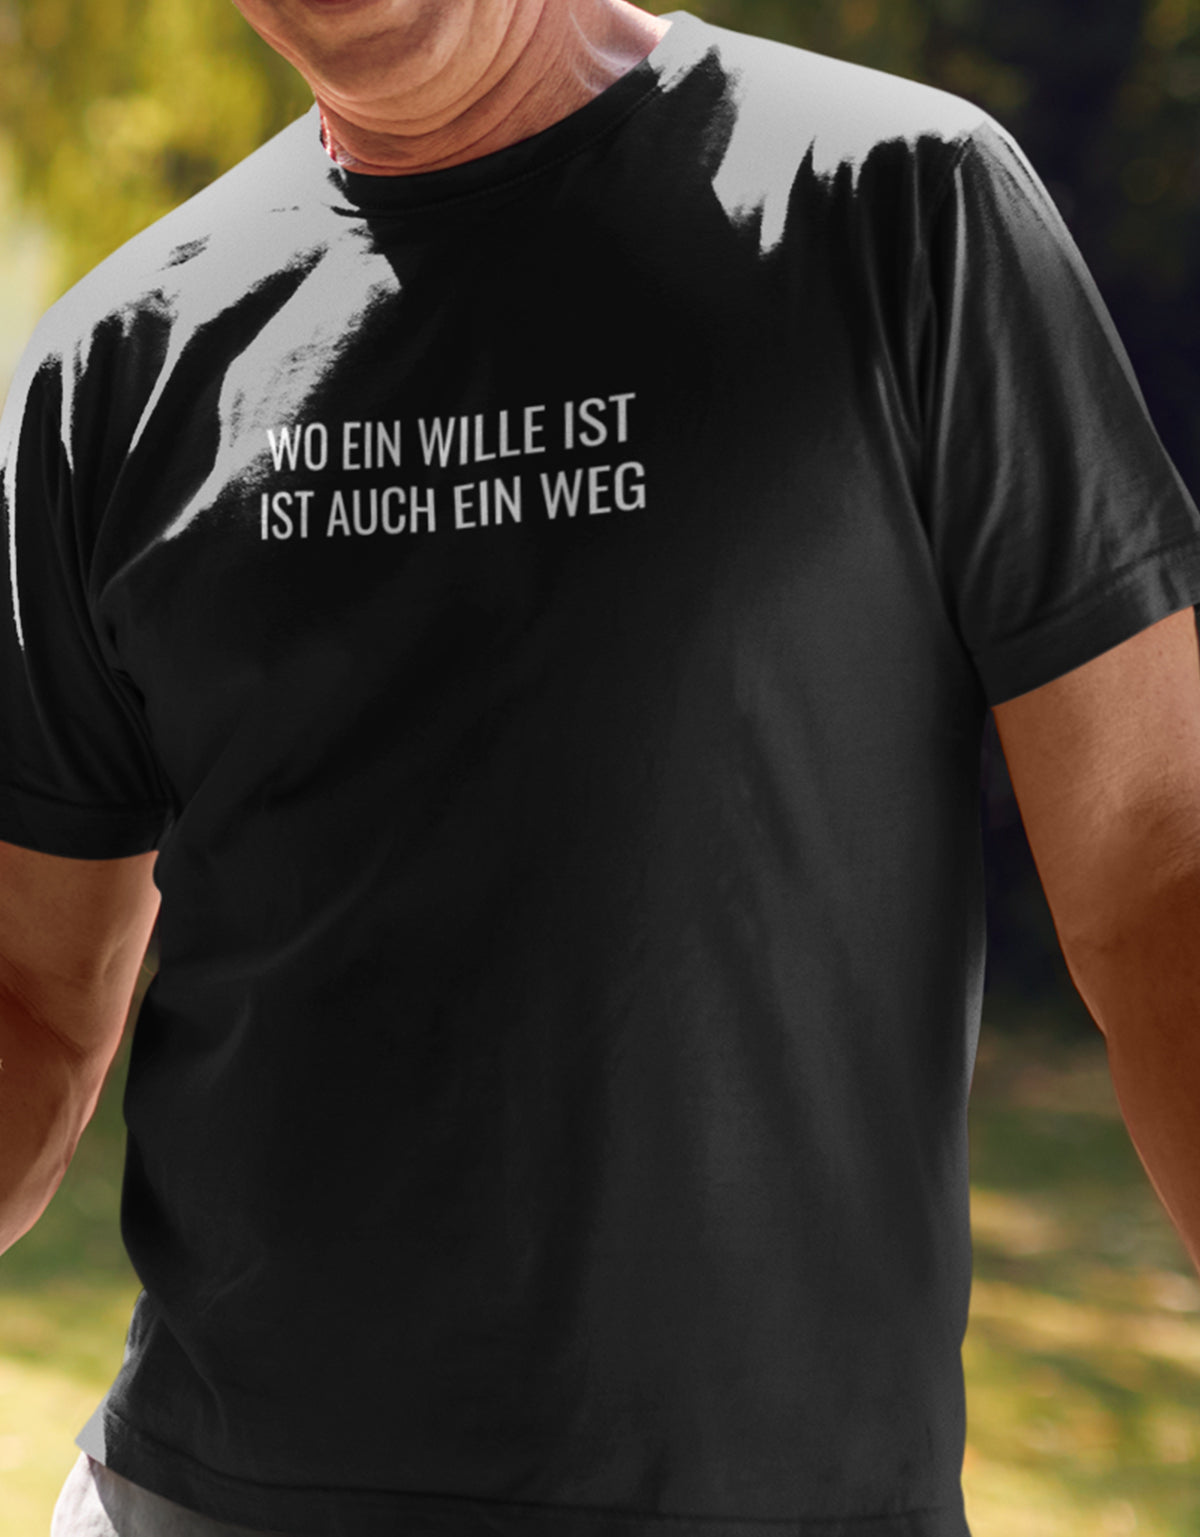 Männer Tshirt mit Wunschtext. Minimalistisches Design.